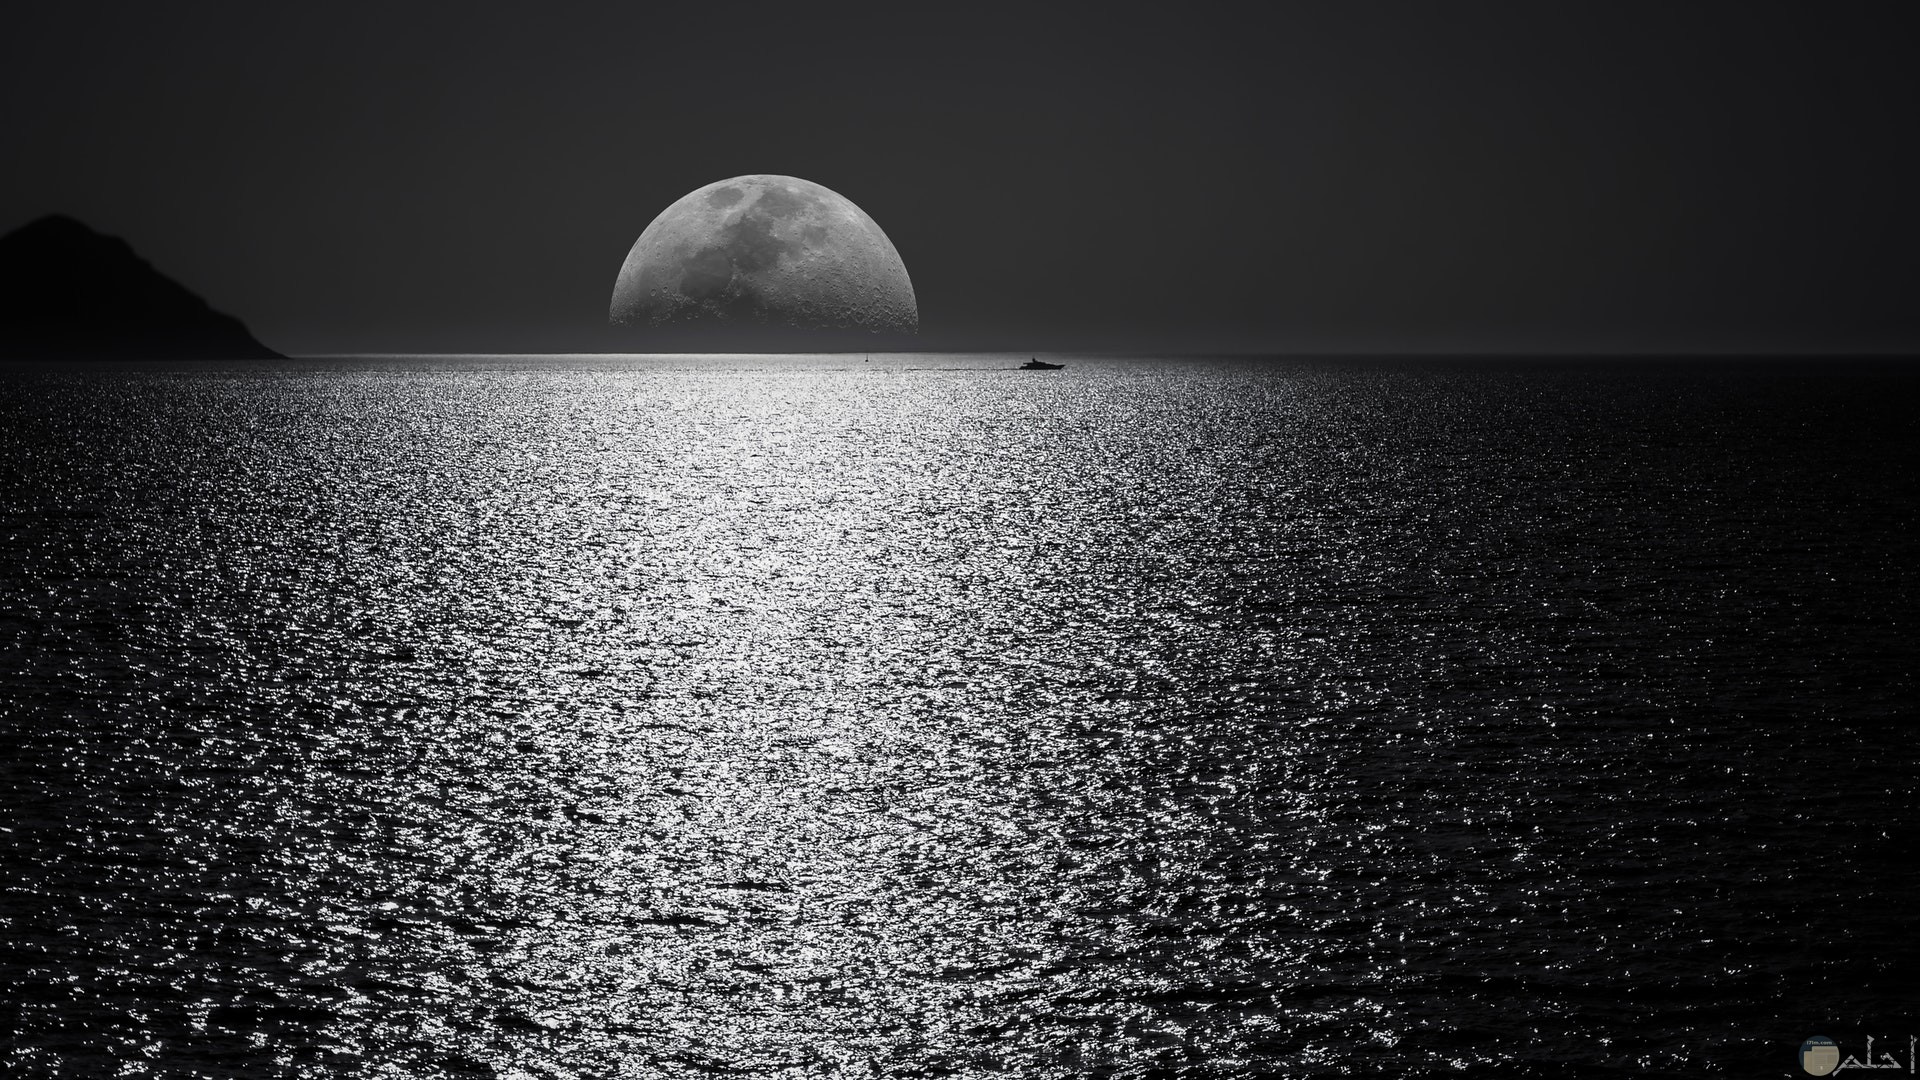 صورة جميلة باللون الأبيض والأسود للقمر والبحر مميزة جدا